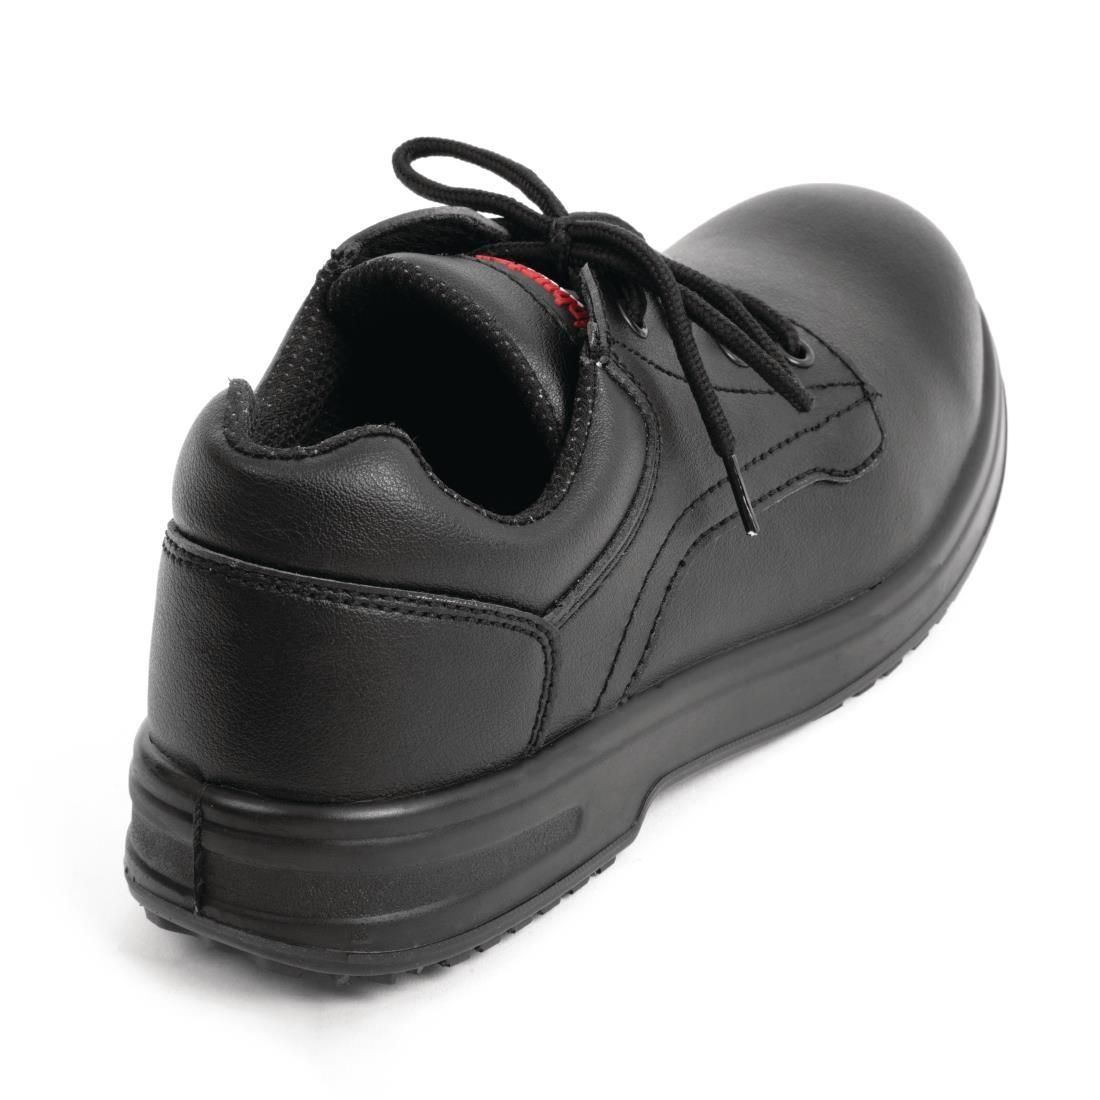 Slipbuster Basic Toe Cap Safety Shoes Black 38 - BB497-38  - 3